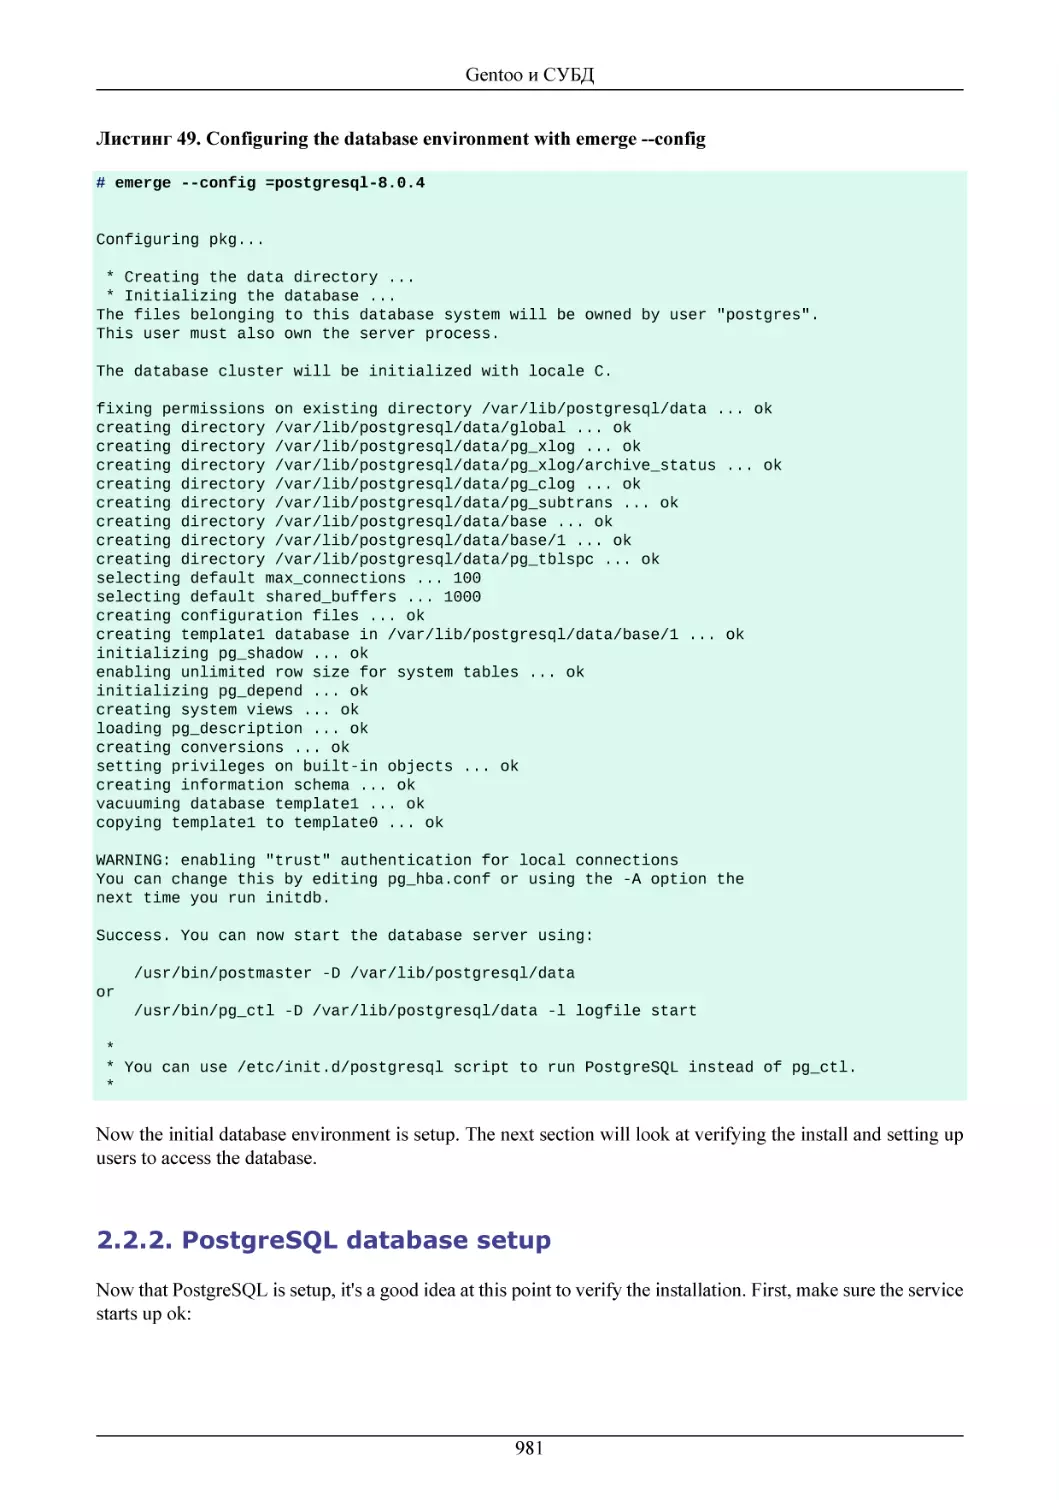 PostgreSQL database setup